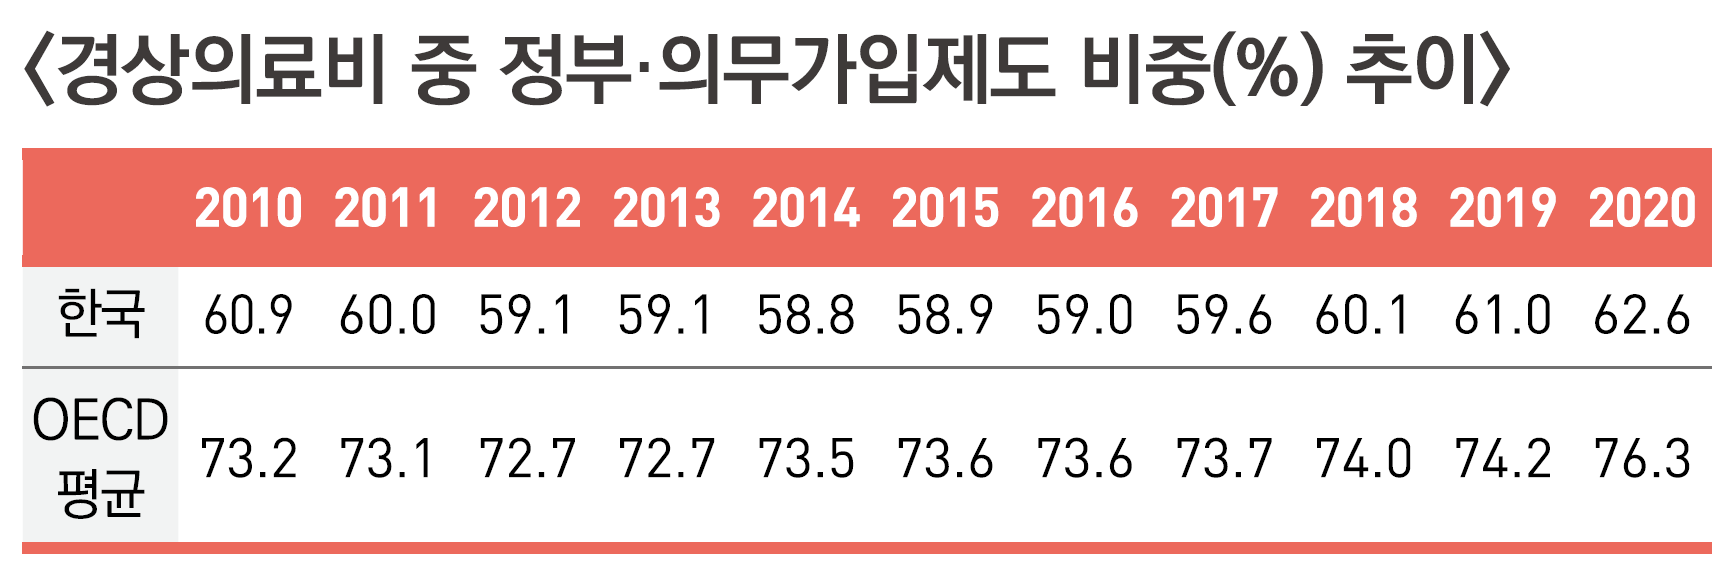 〈복지부, 한국보건사회연구원 2022〉자료 중 발췌